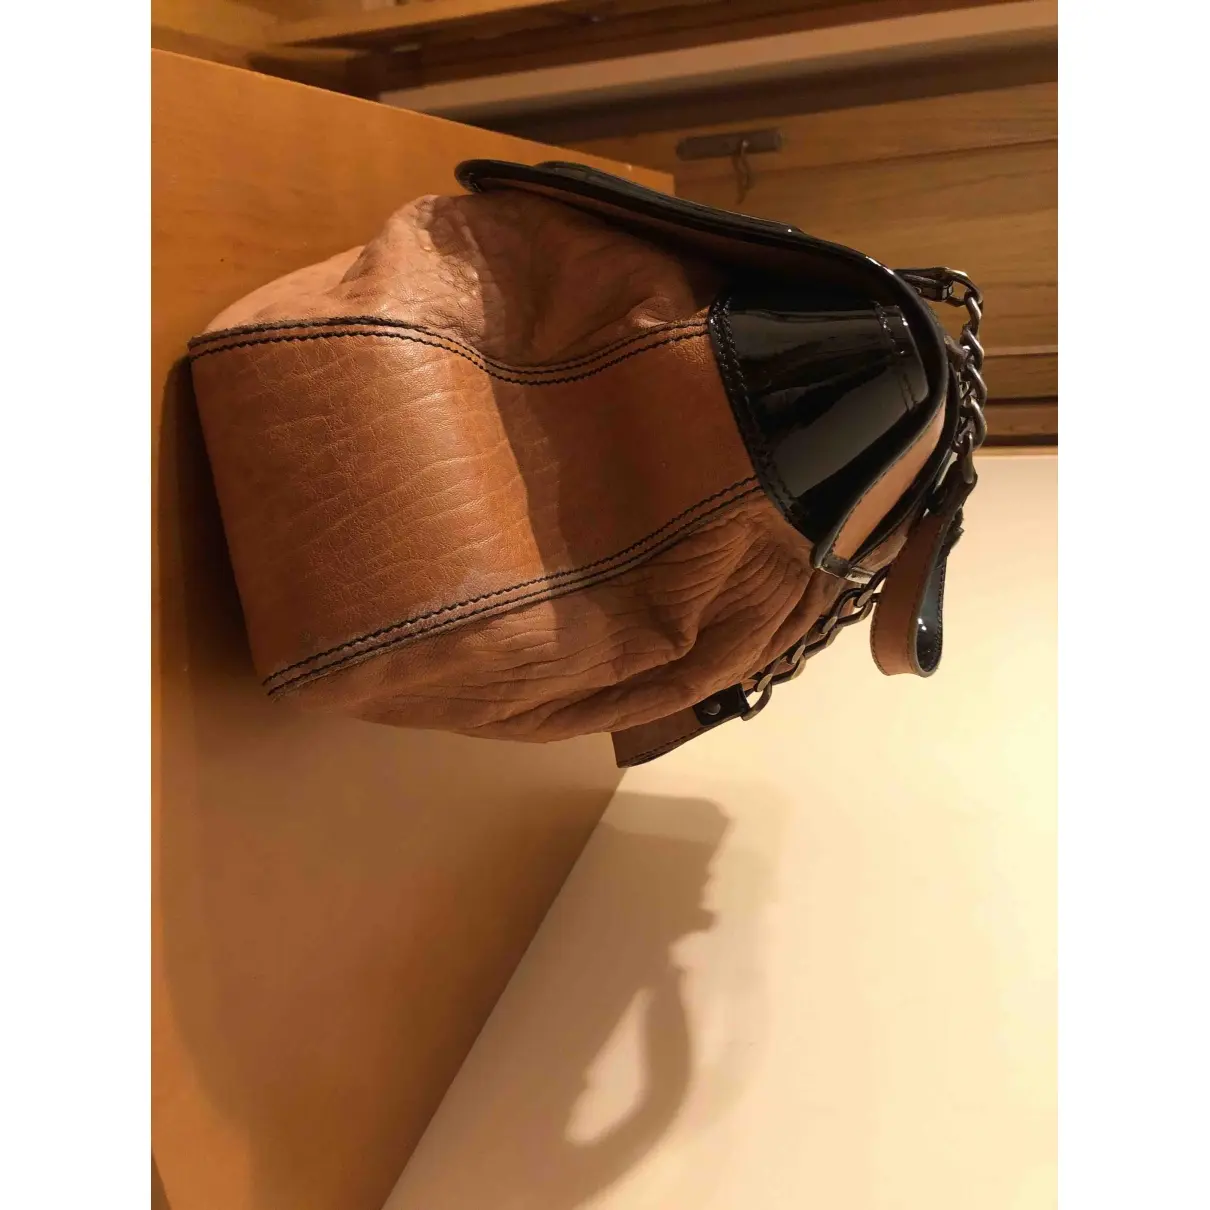 Buy Fendi Bag leather handbag online - Vintage